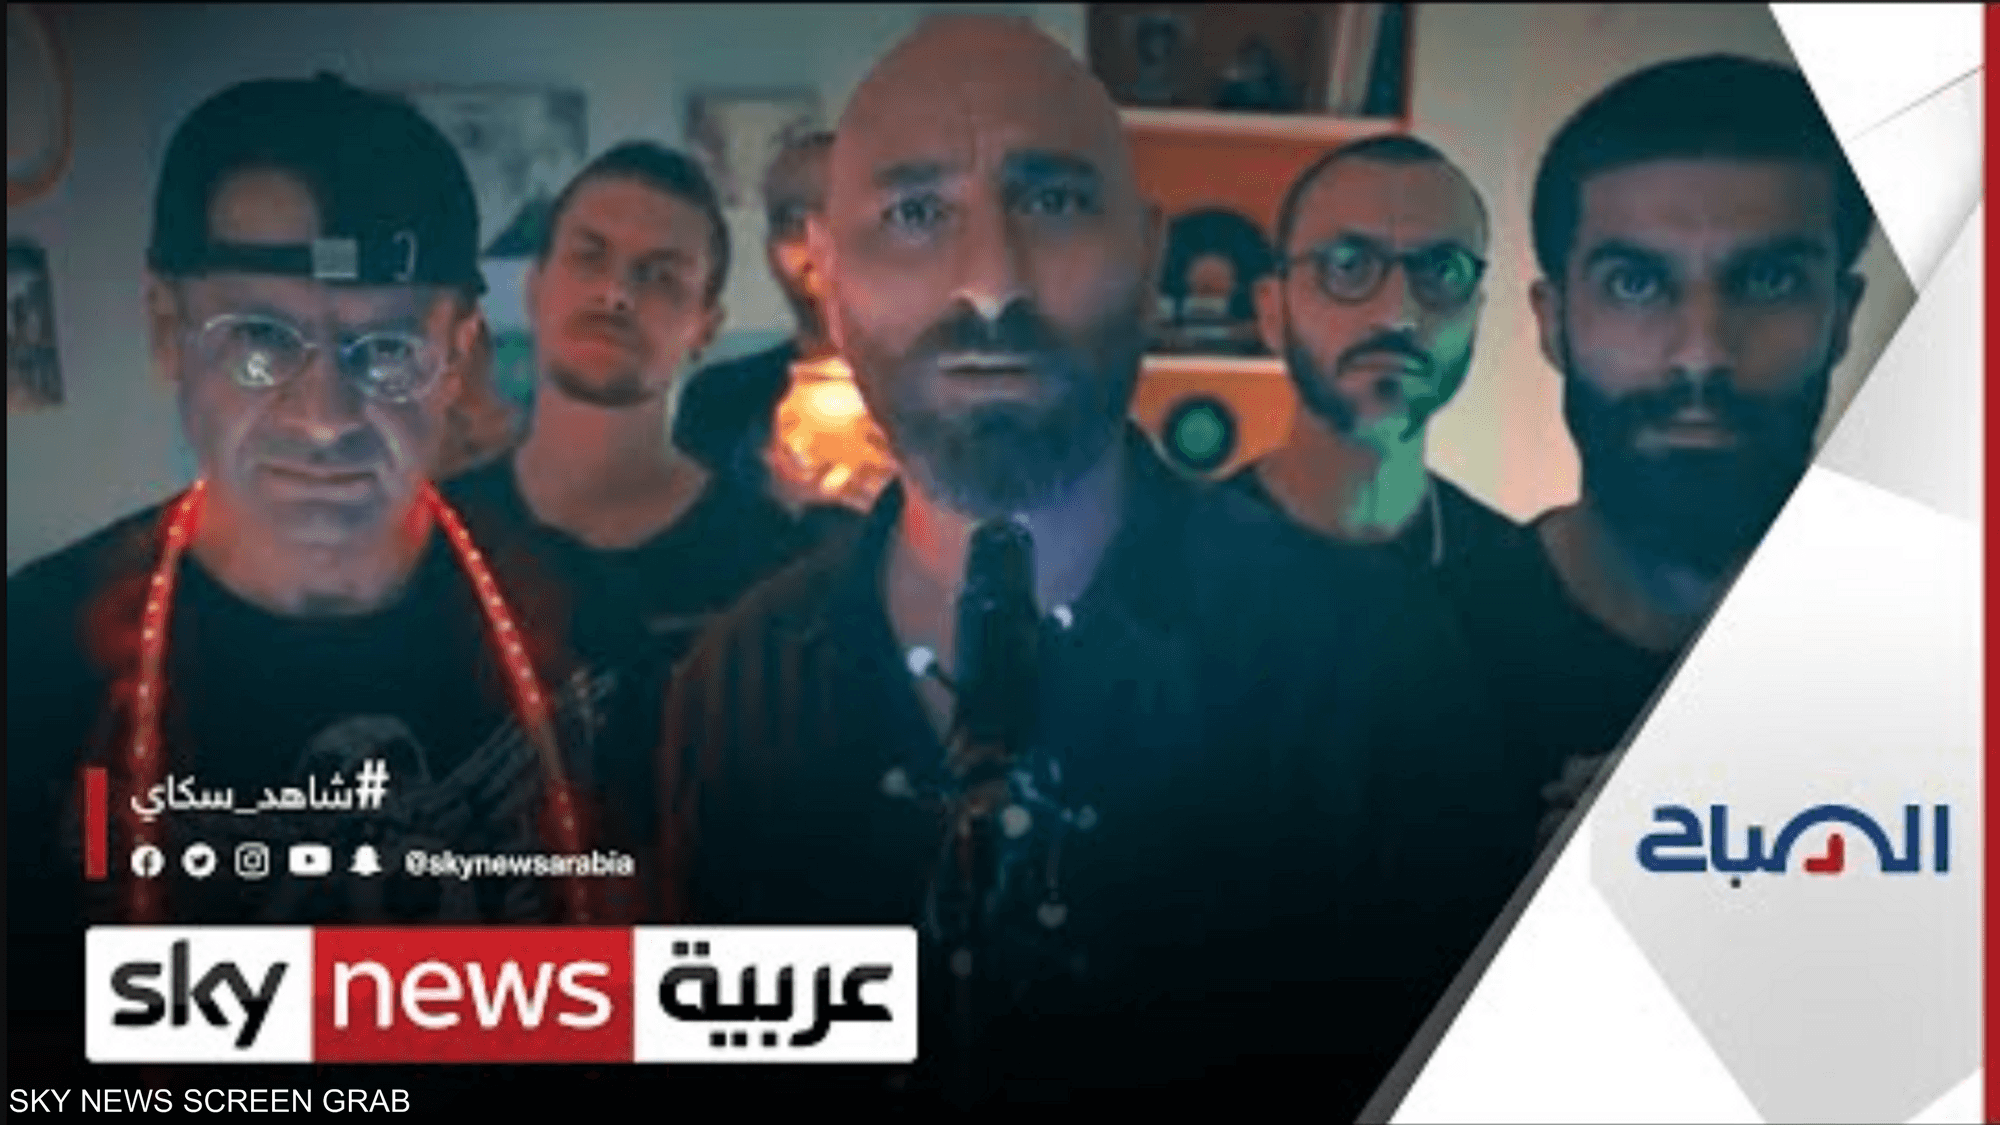 فرقة "سفر" تغنّي للحب في قلب أزمة الكهرباء في سوريا